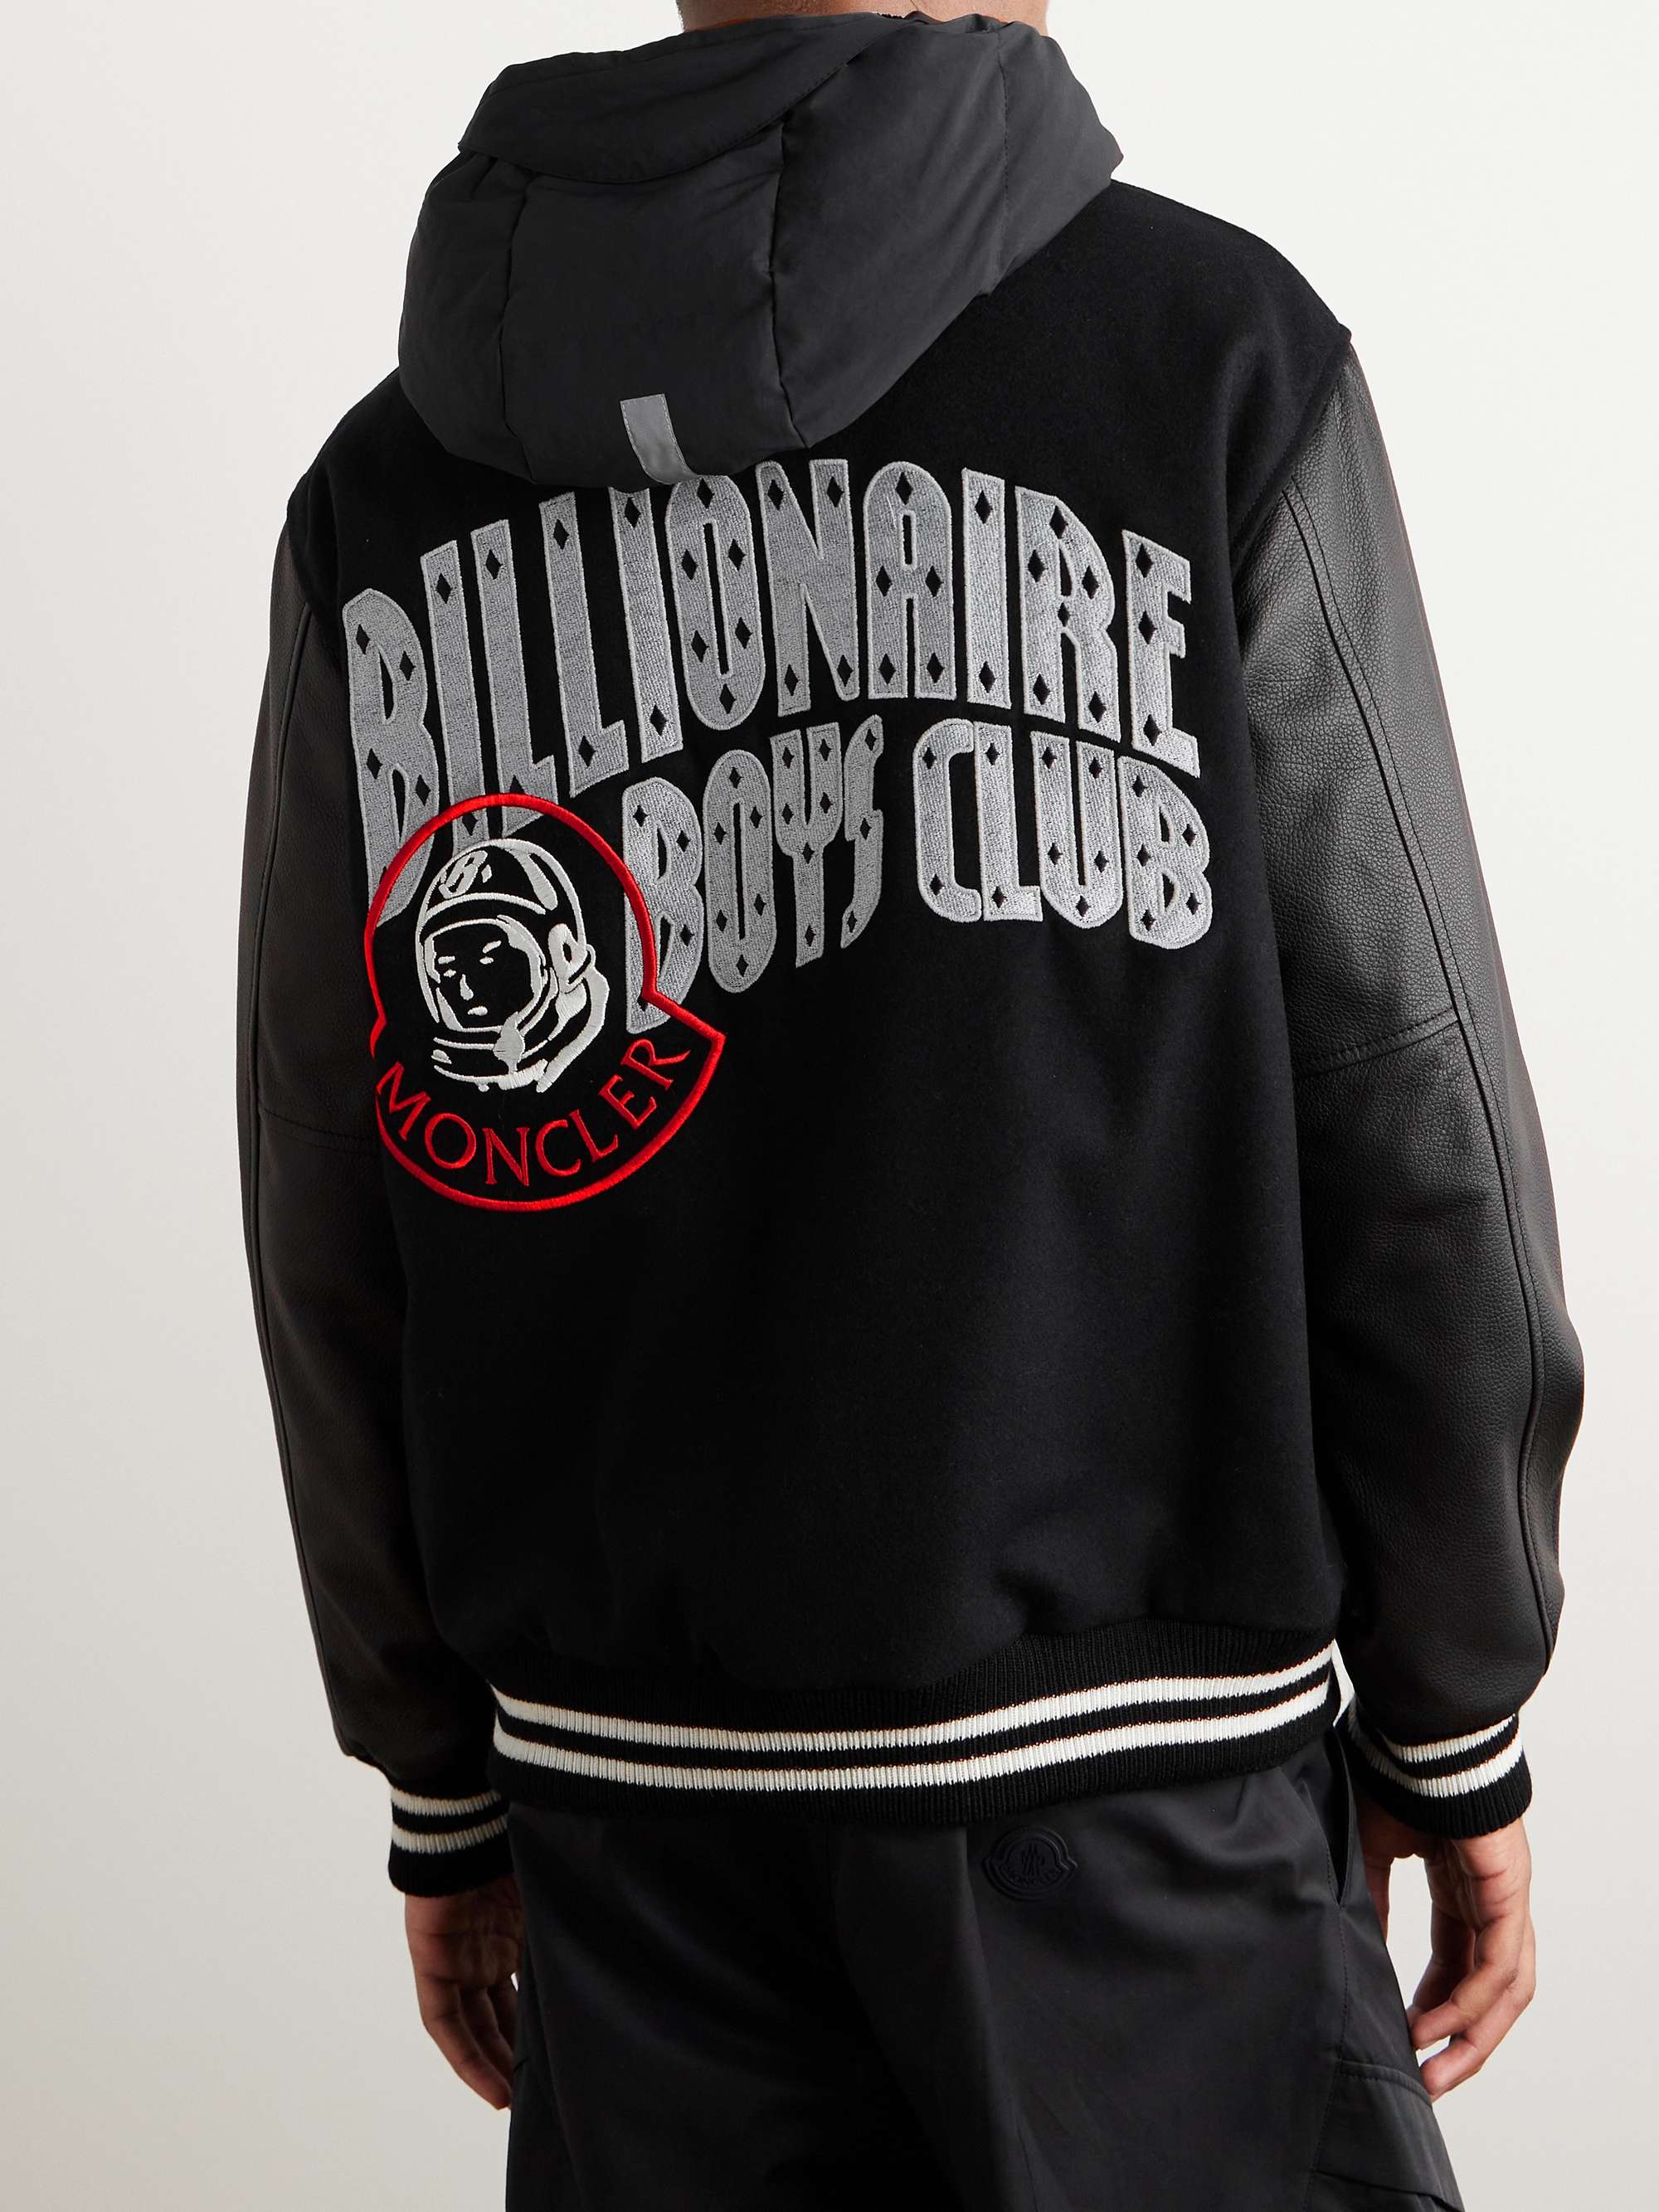 MONCLER GENIUS + Billionare Boys Club Leather-Trimmed Logo-Appliquéd ...